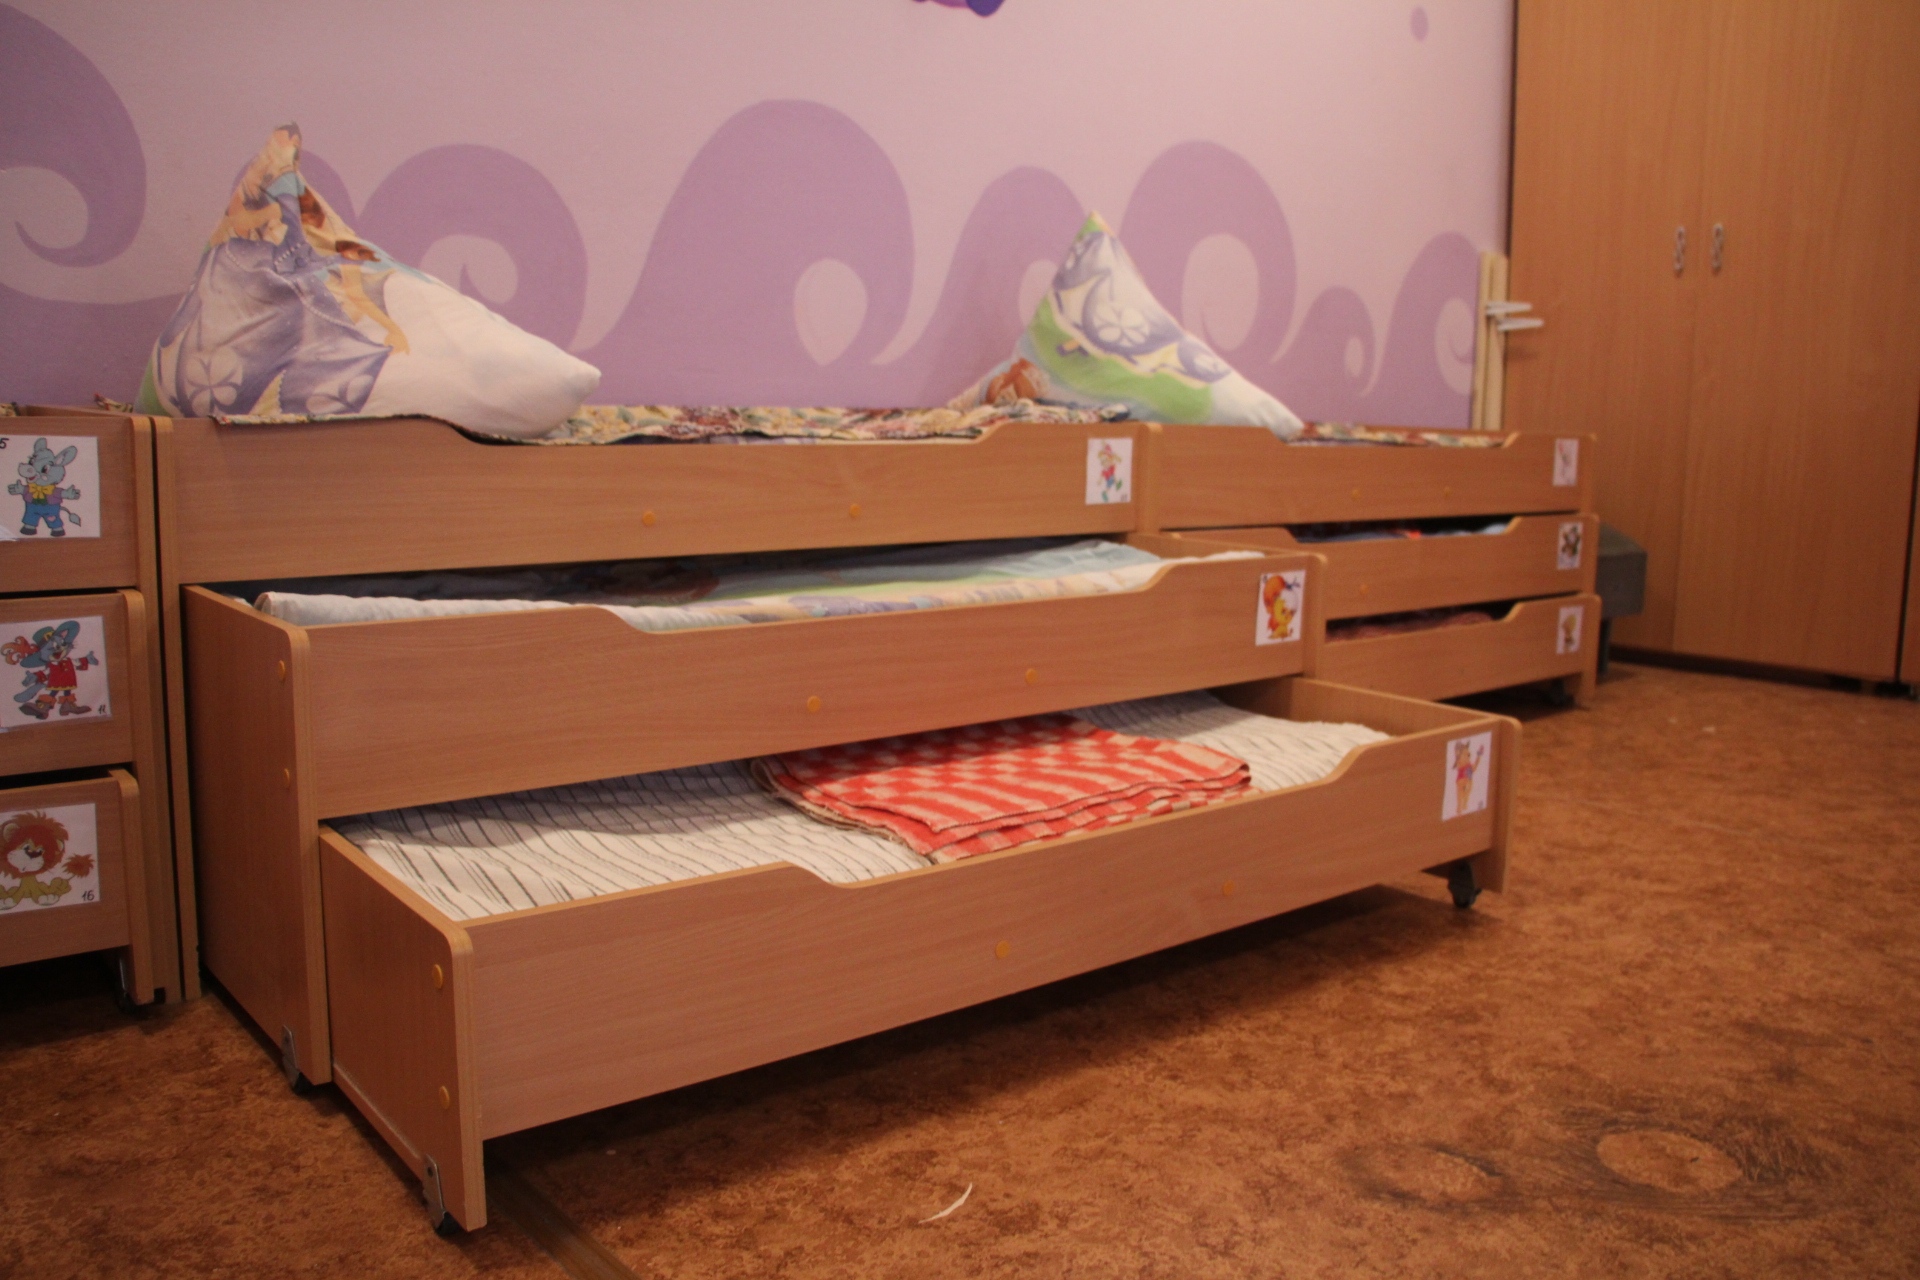 Так выглядят новые трёхспальные кровати для детей